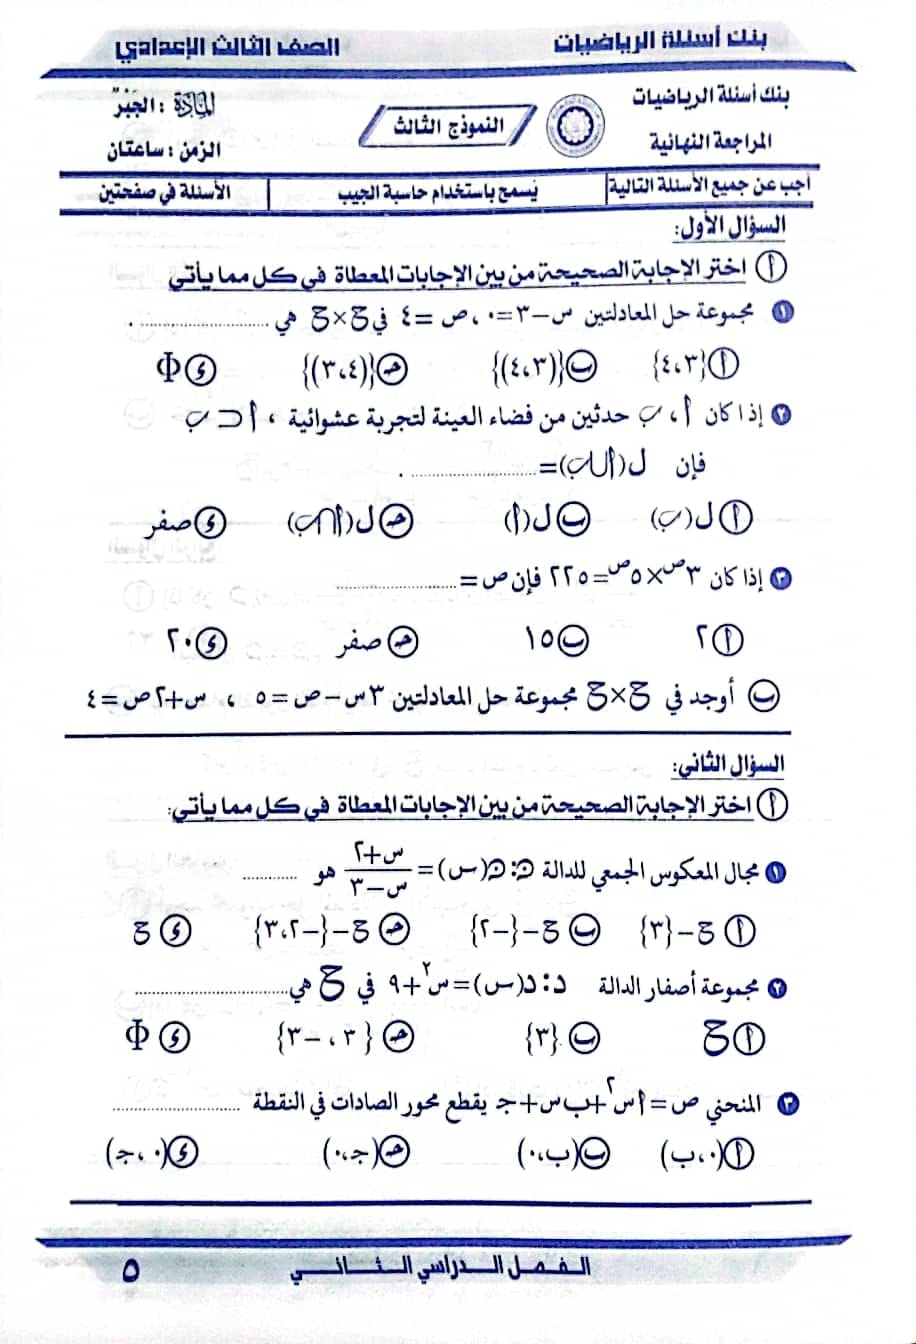 مدرس دوت كوم حل النموذج الثالث فى الجبر إمتحان الدقهلية ٢٠١٩ من مذكرة توجيه الرياضيات بالدقهلية ٢٠٢٤ للصف الثالث الاعدادي الترم الثانى أ/ مصطفى لاشين	